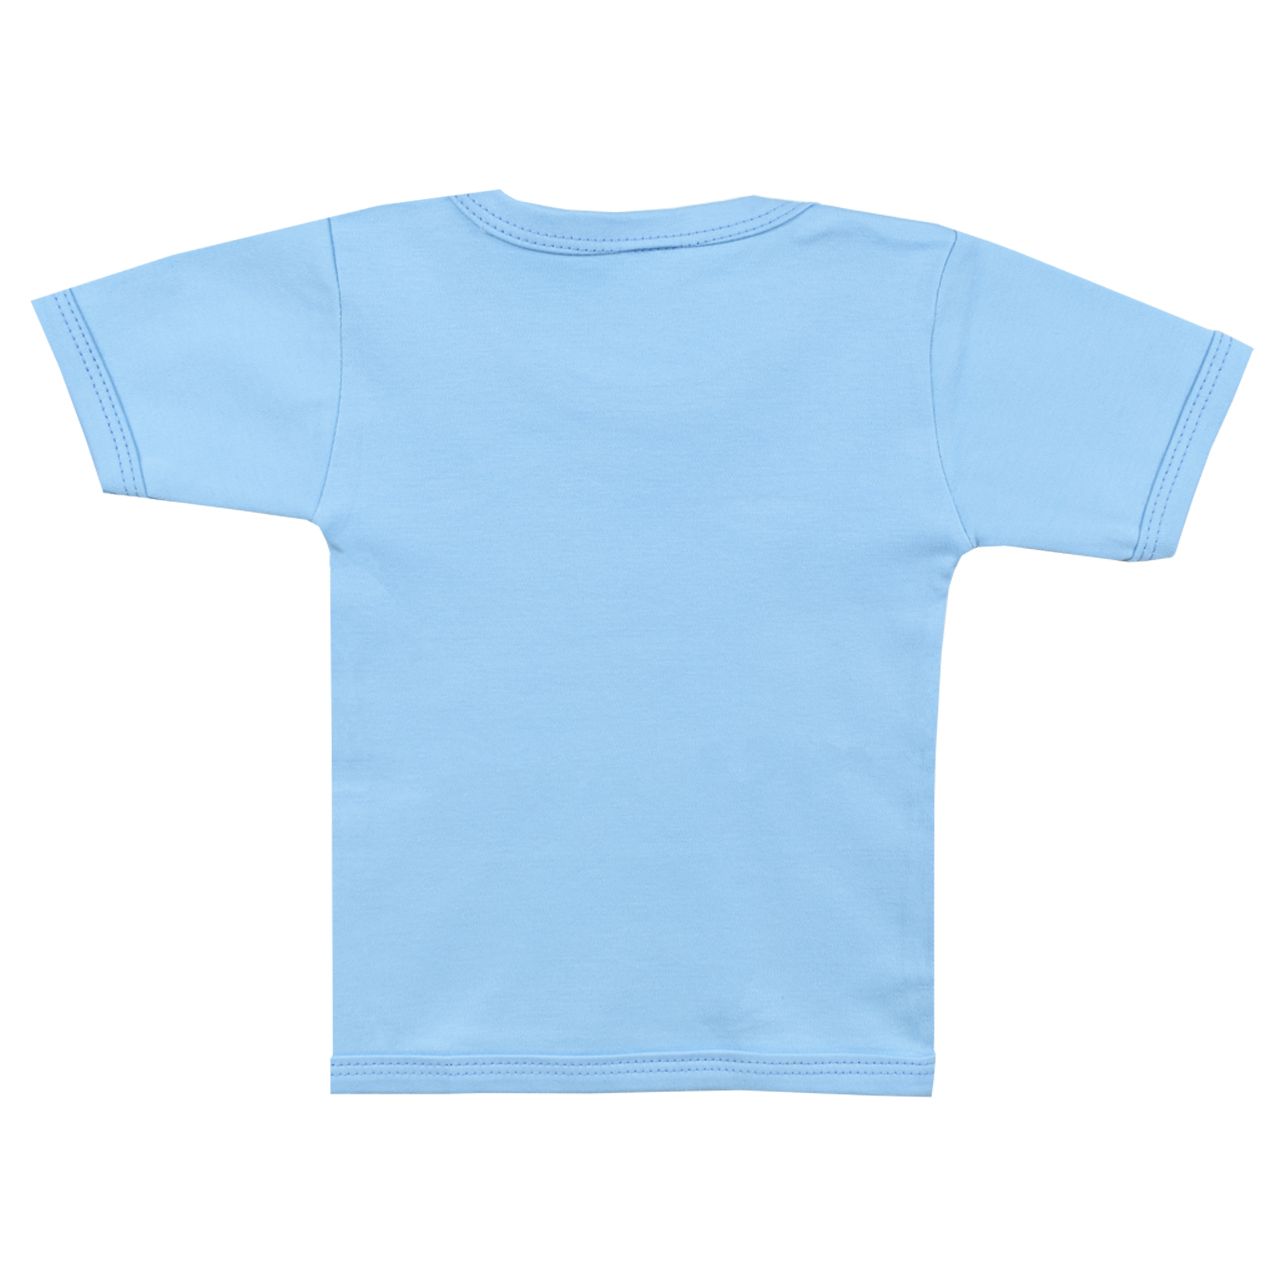 تی شرت آستین کوتاه نوزادی اسپیکو مدل کاج کد 1 -  - 3